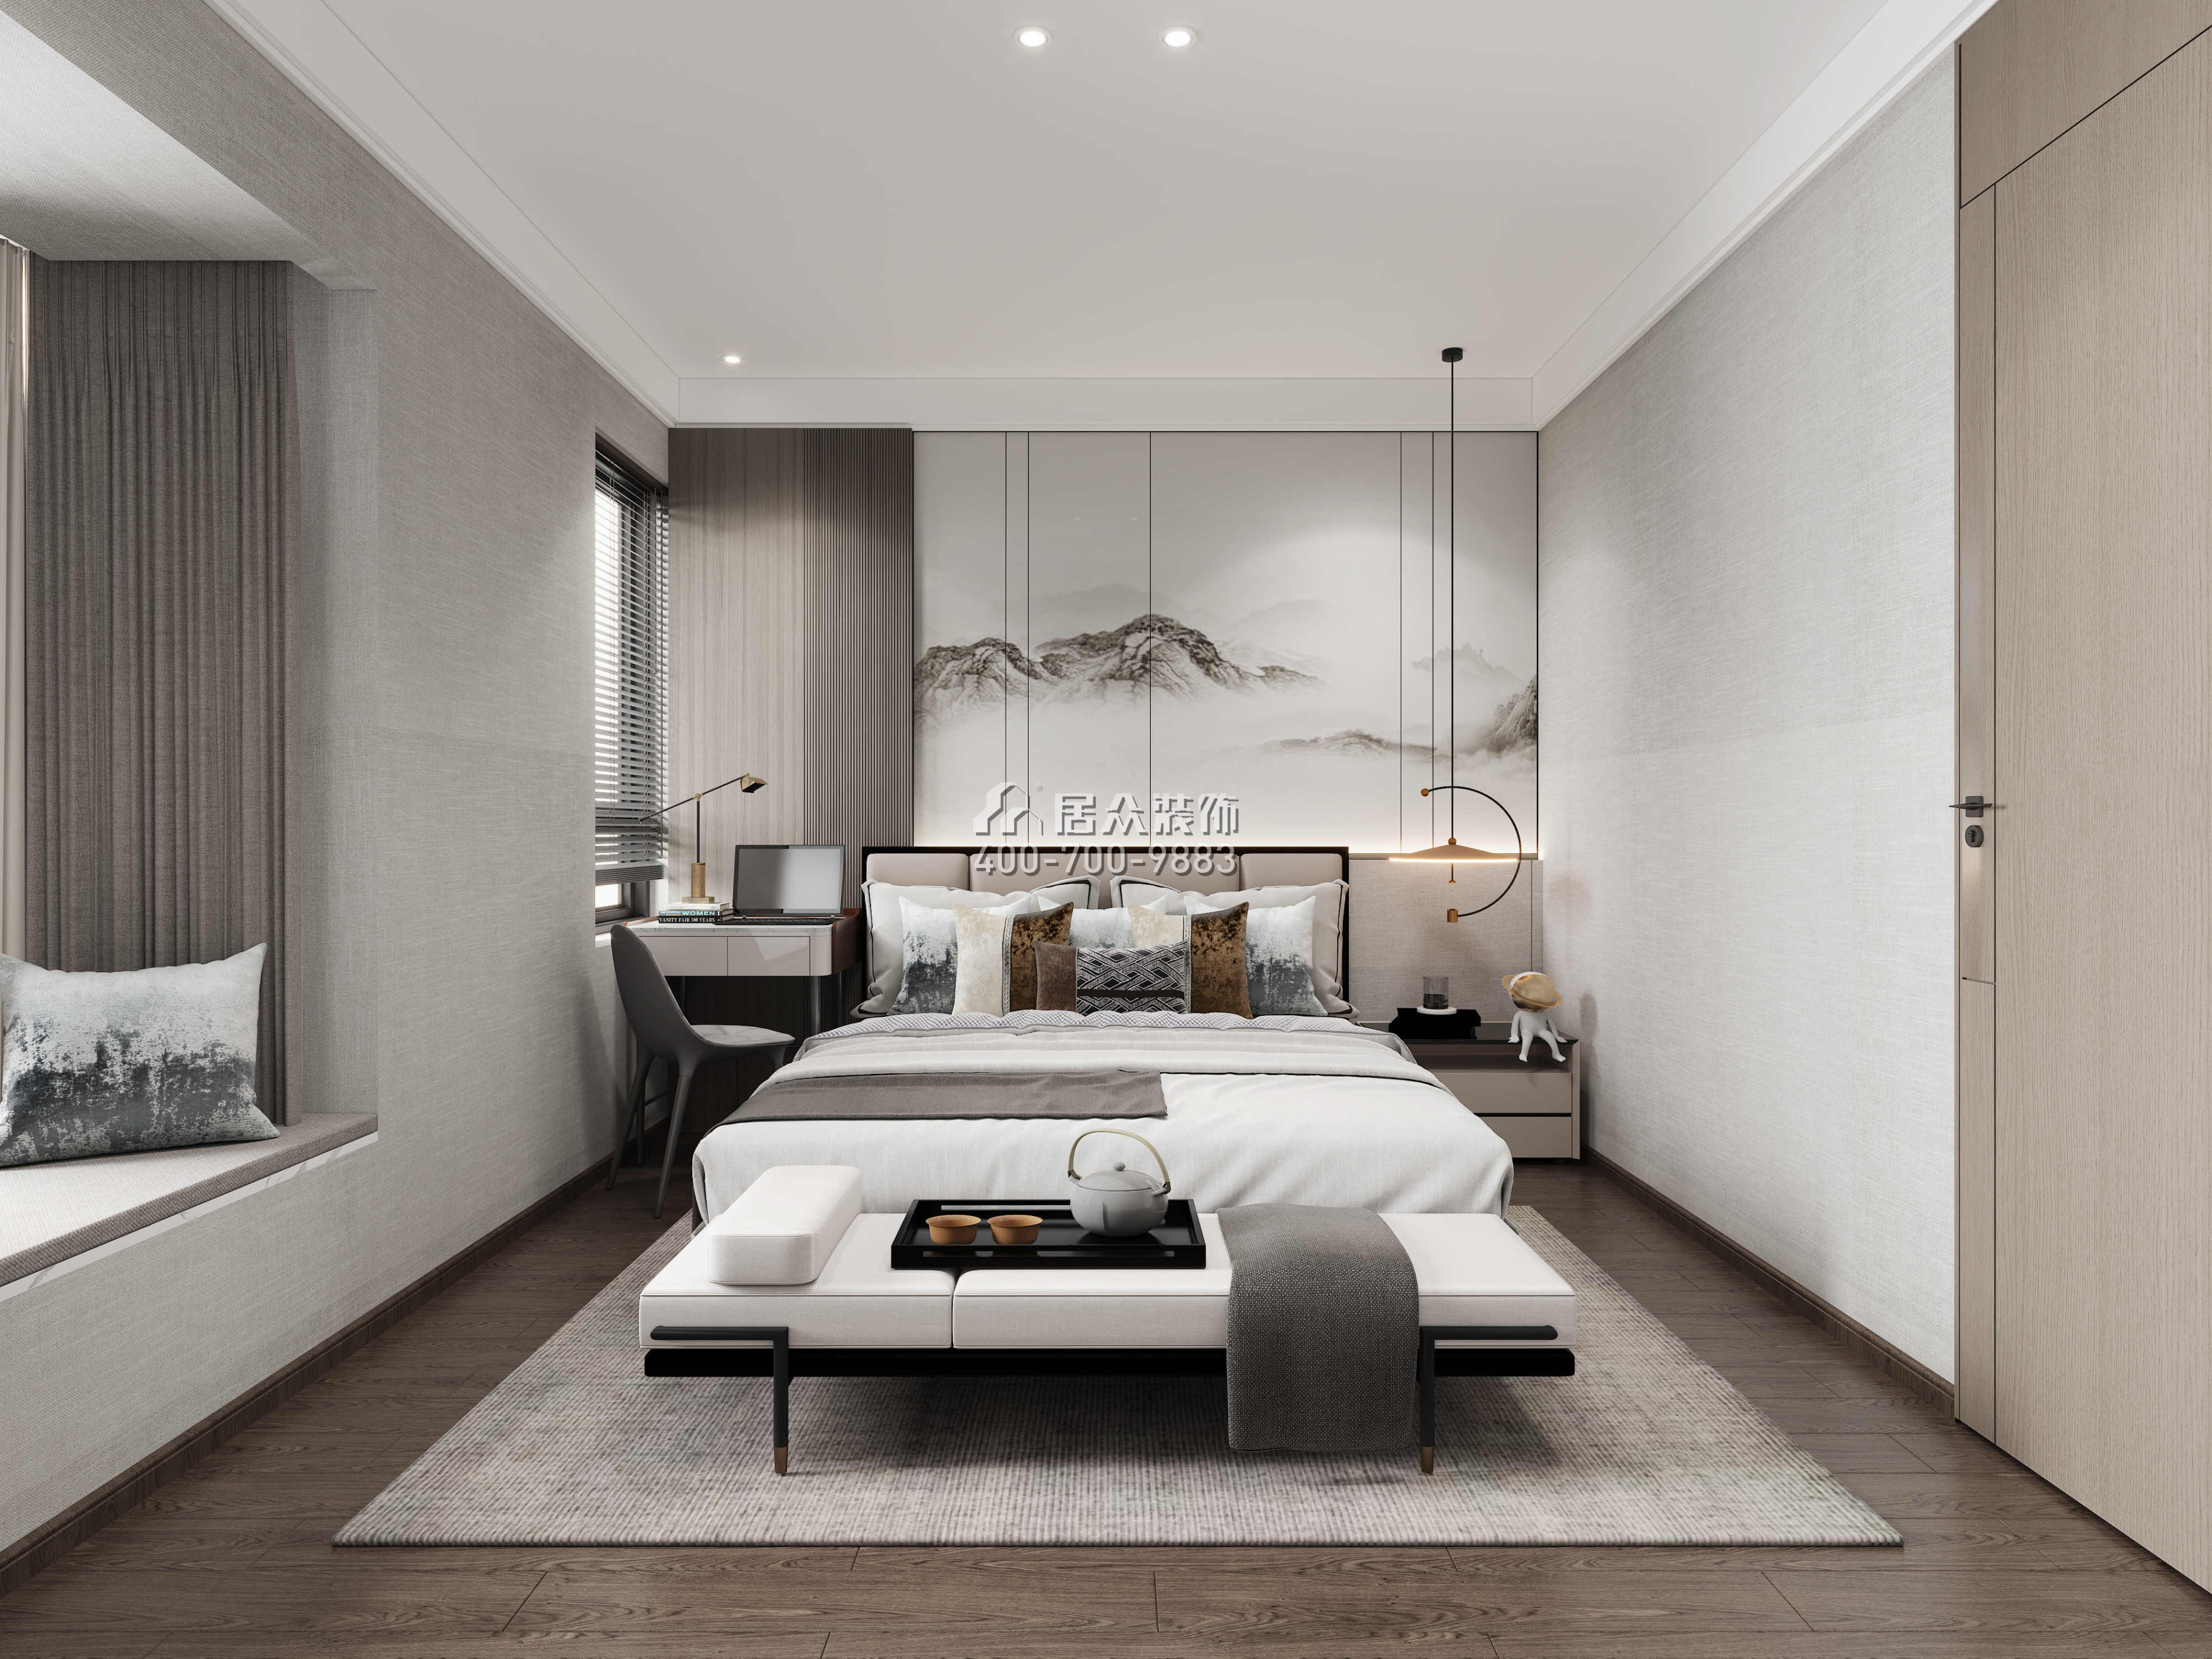 寶利豪庭500平方米中式風格復式戶型臥室裝修效果圖